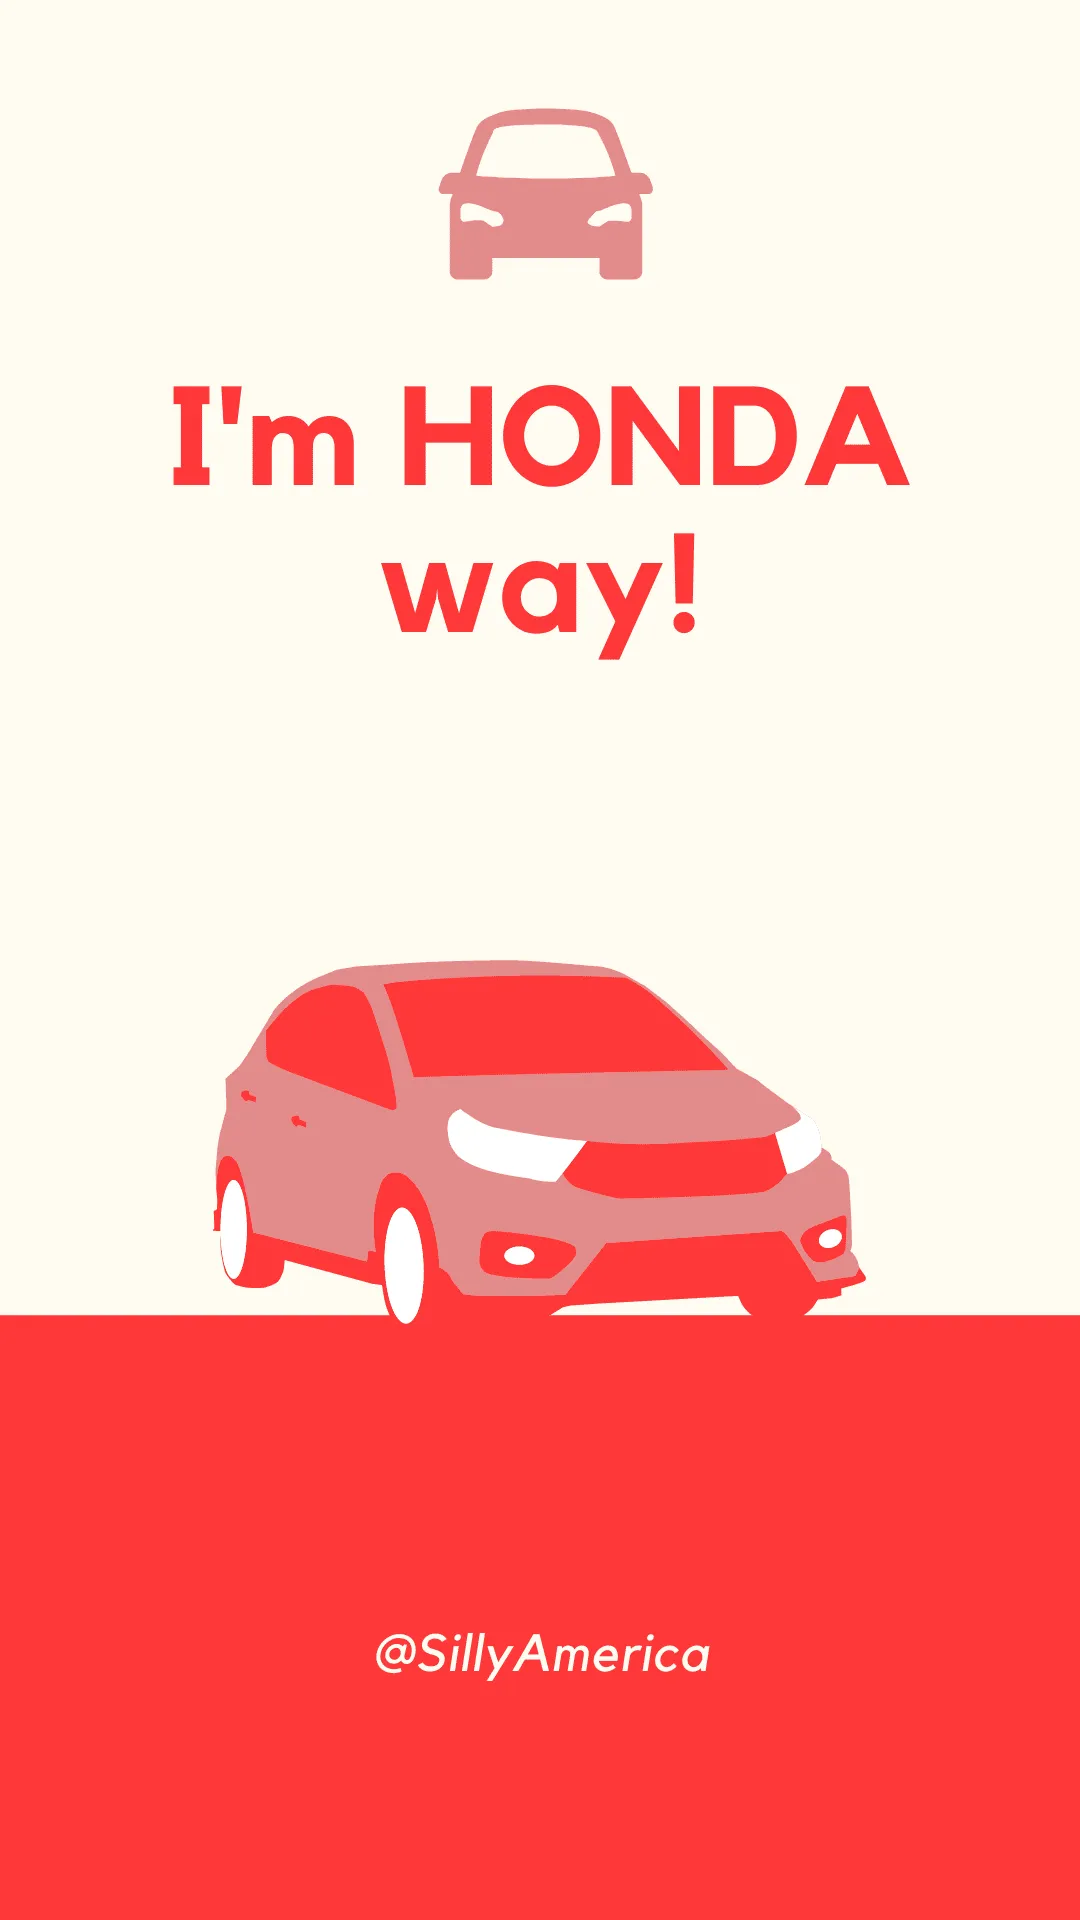 I'm HONDA way! - Car Puns to fuel your road trip content!